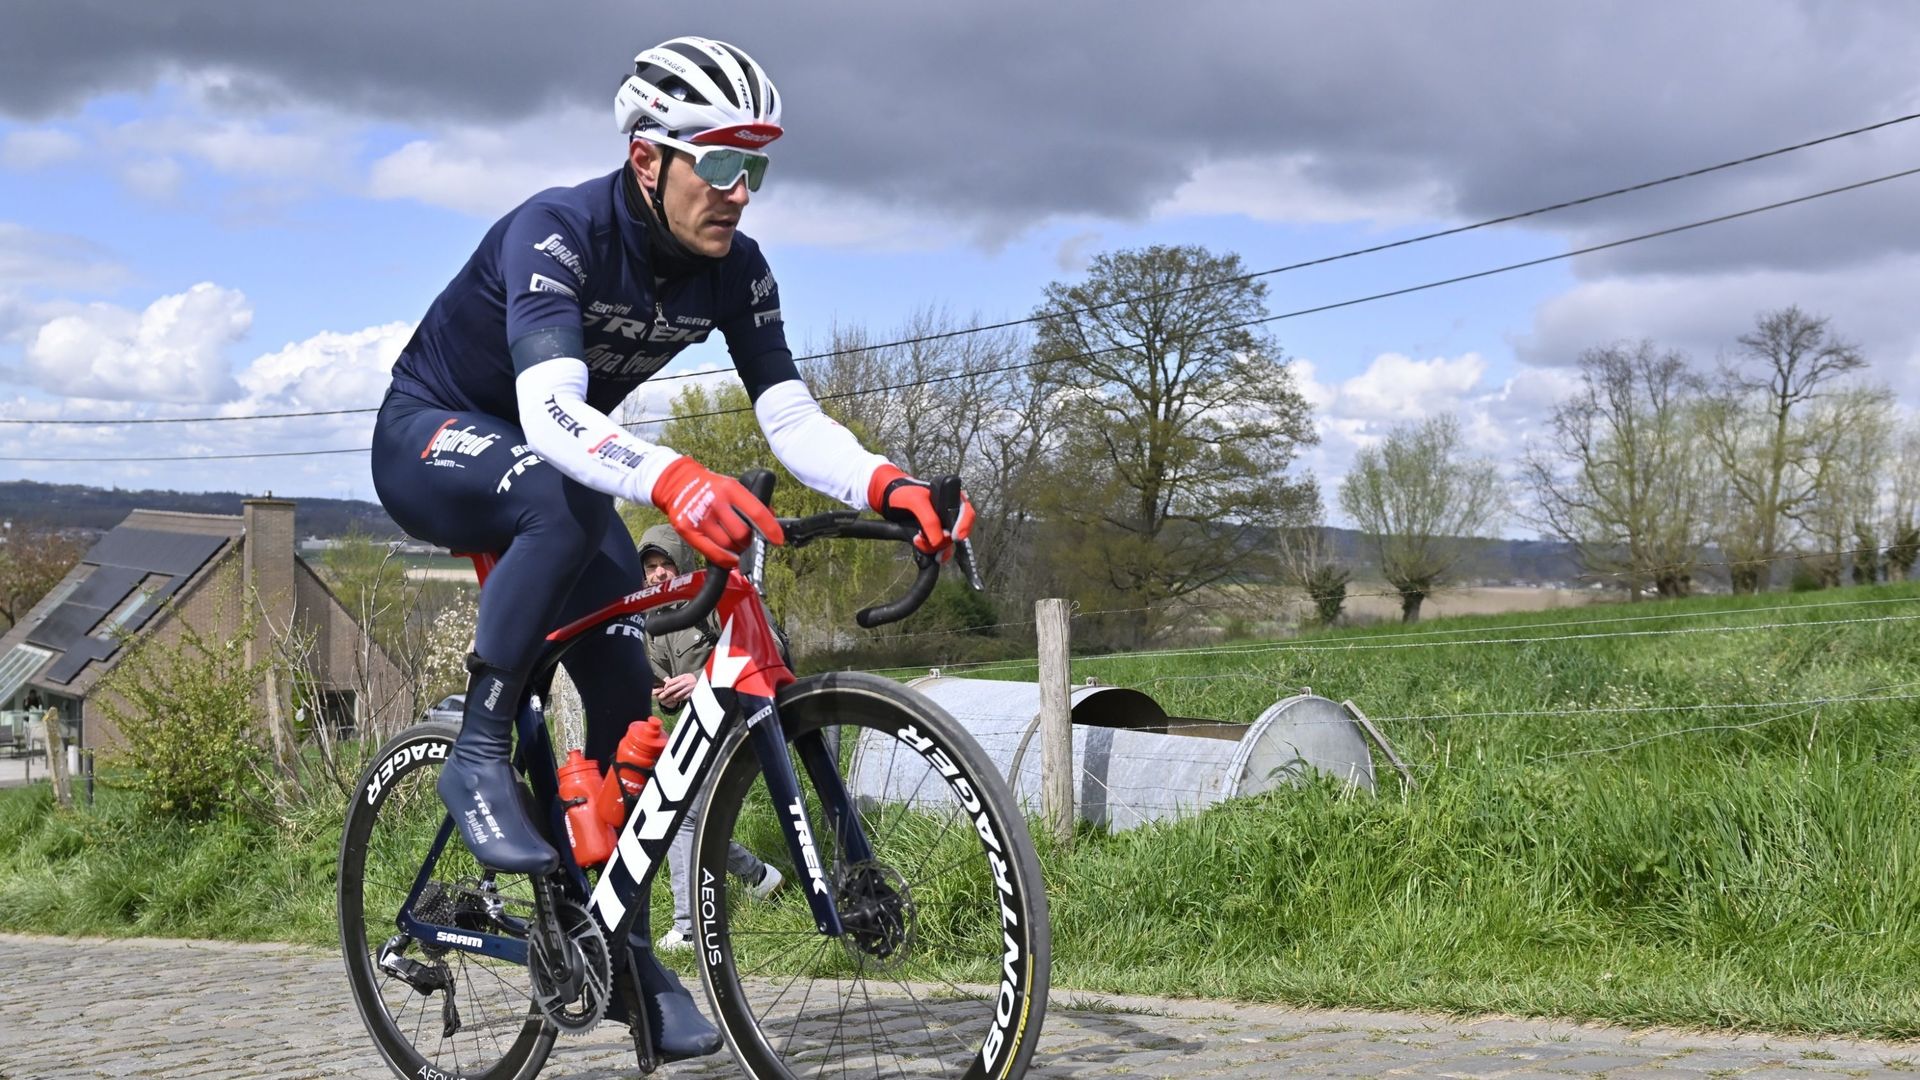 Cyclisme : Jasper Stuyven en reconnaissance sur les pavés du Tour des Flandres. Le coureur Trek-Segafredo nourrit des ambitions après sa 4ème place l'an dernier.